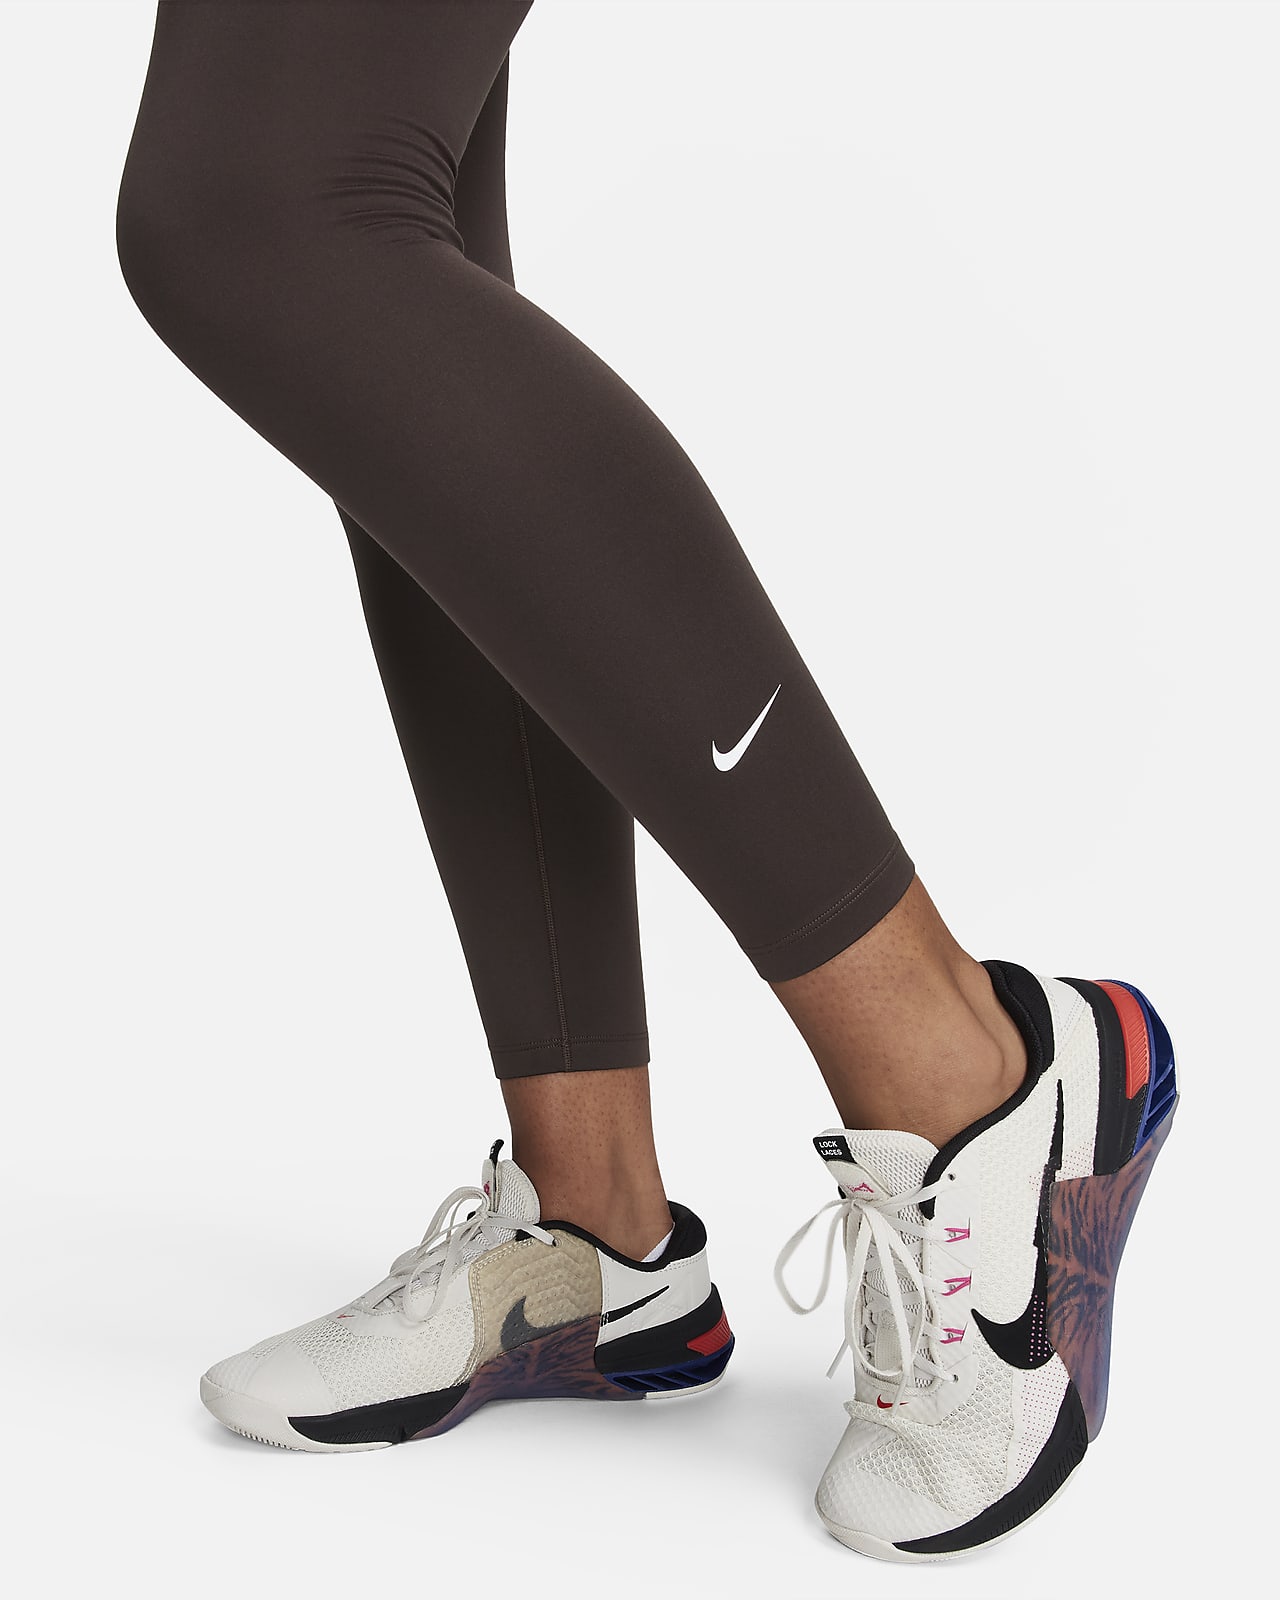 Damskie legginsy 7/8 z wysokim stanem Therma-FIT Nike One. Nike PL